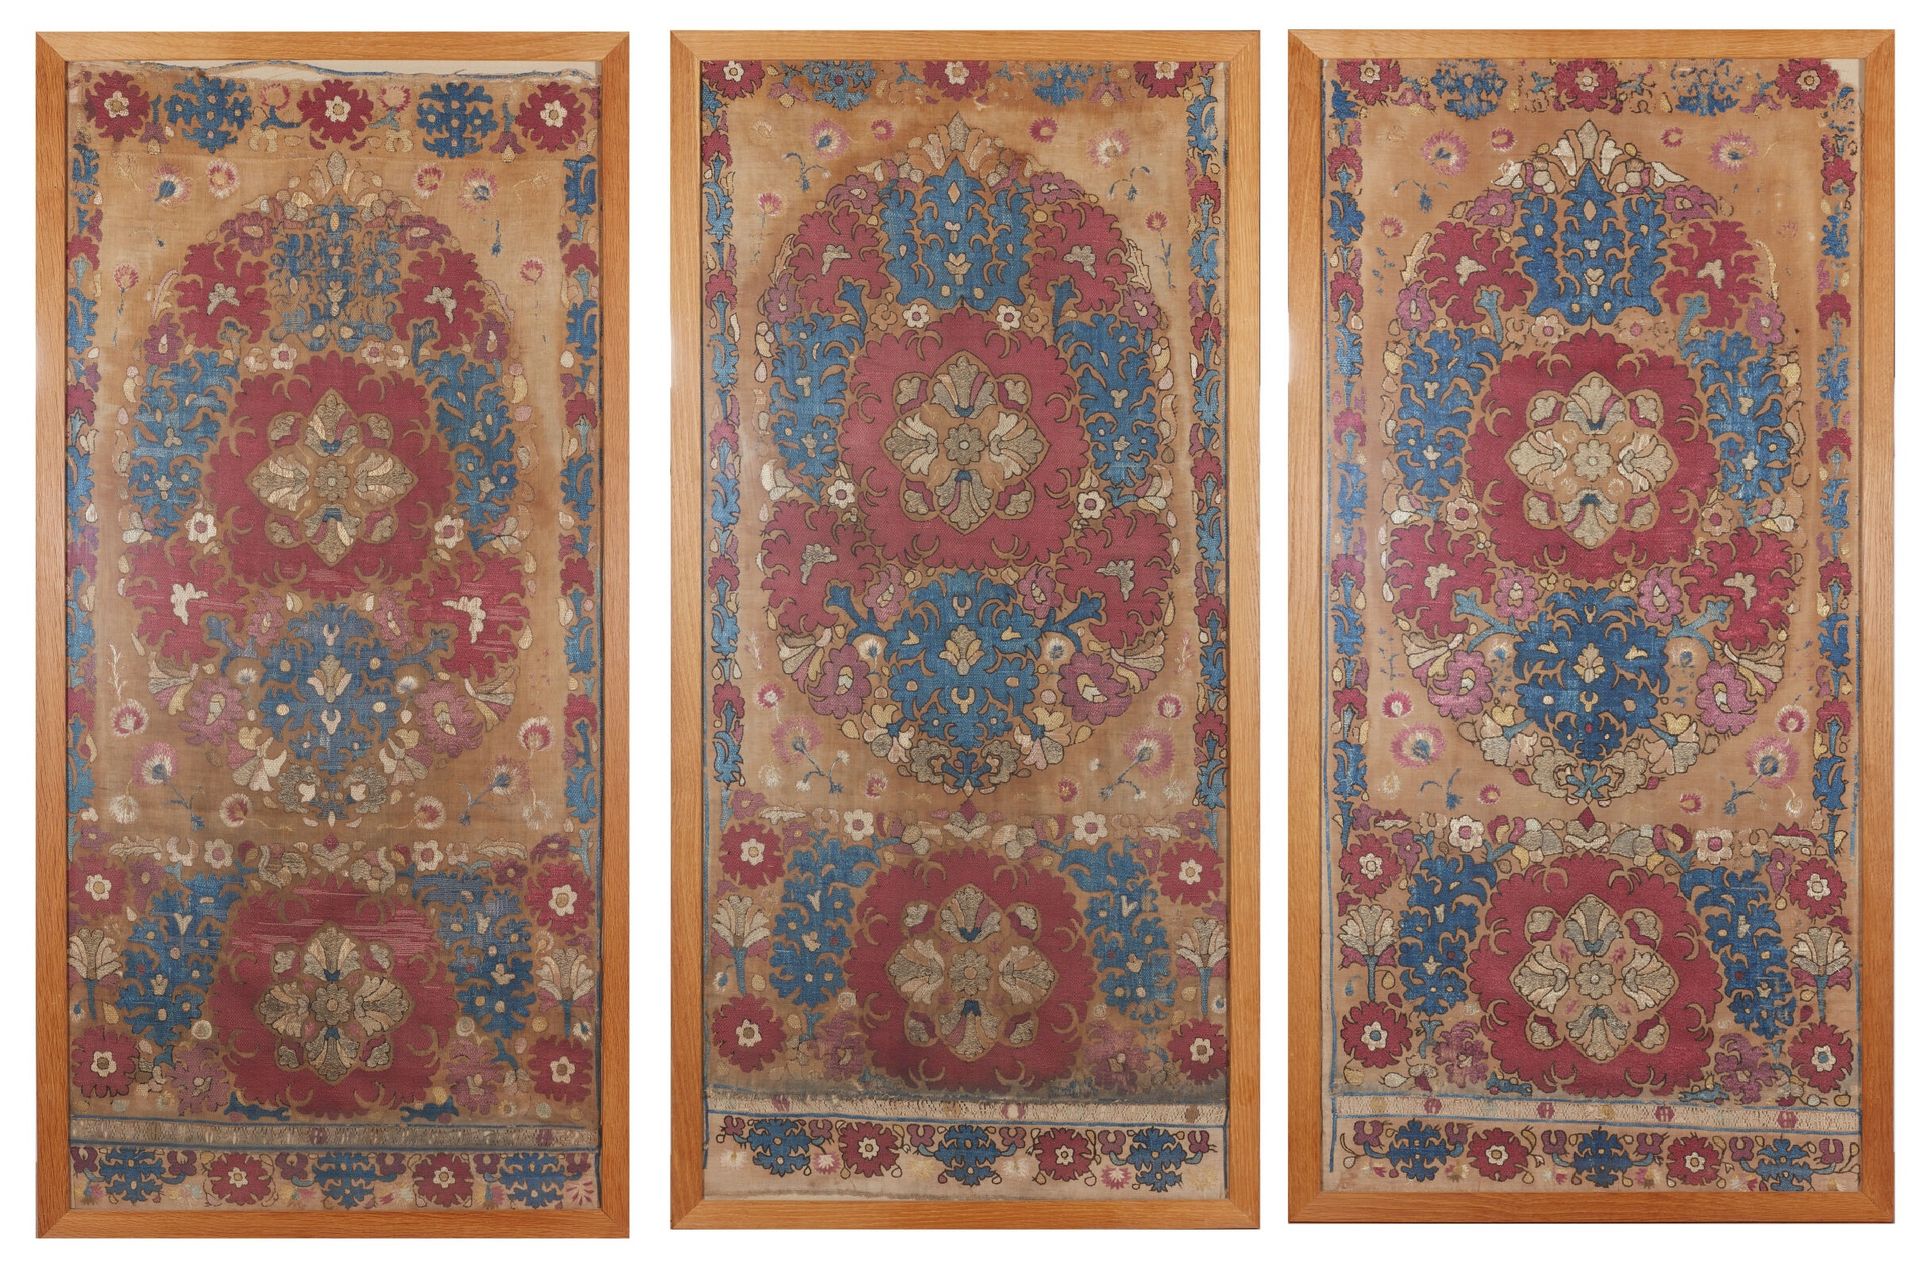 Null 三幅 "阿尔及尔刺绣
北非，阿尔及利亚，18 世纪晚期至 19 世纪
三件灰色亚麻布花蕊刺绣挂毯，主要用蓝色、红色和白色丝线以及金色或银色金属线刺绣。&hellip;